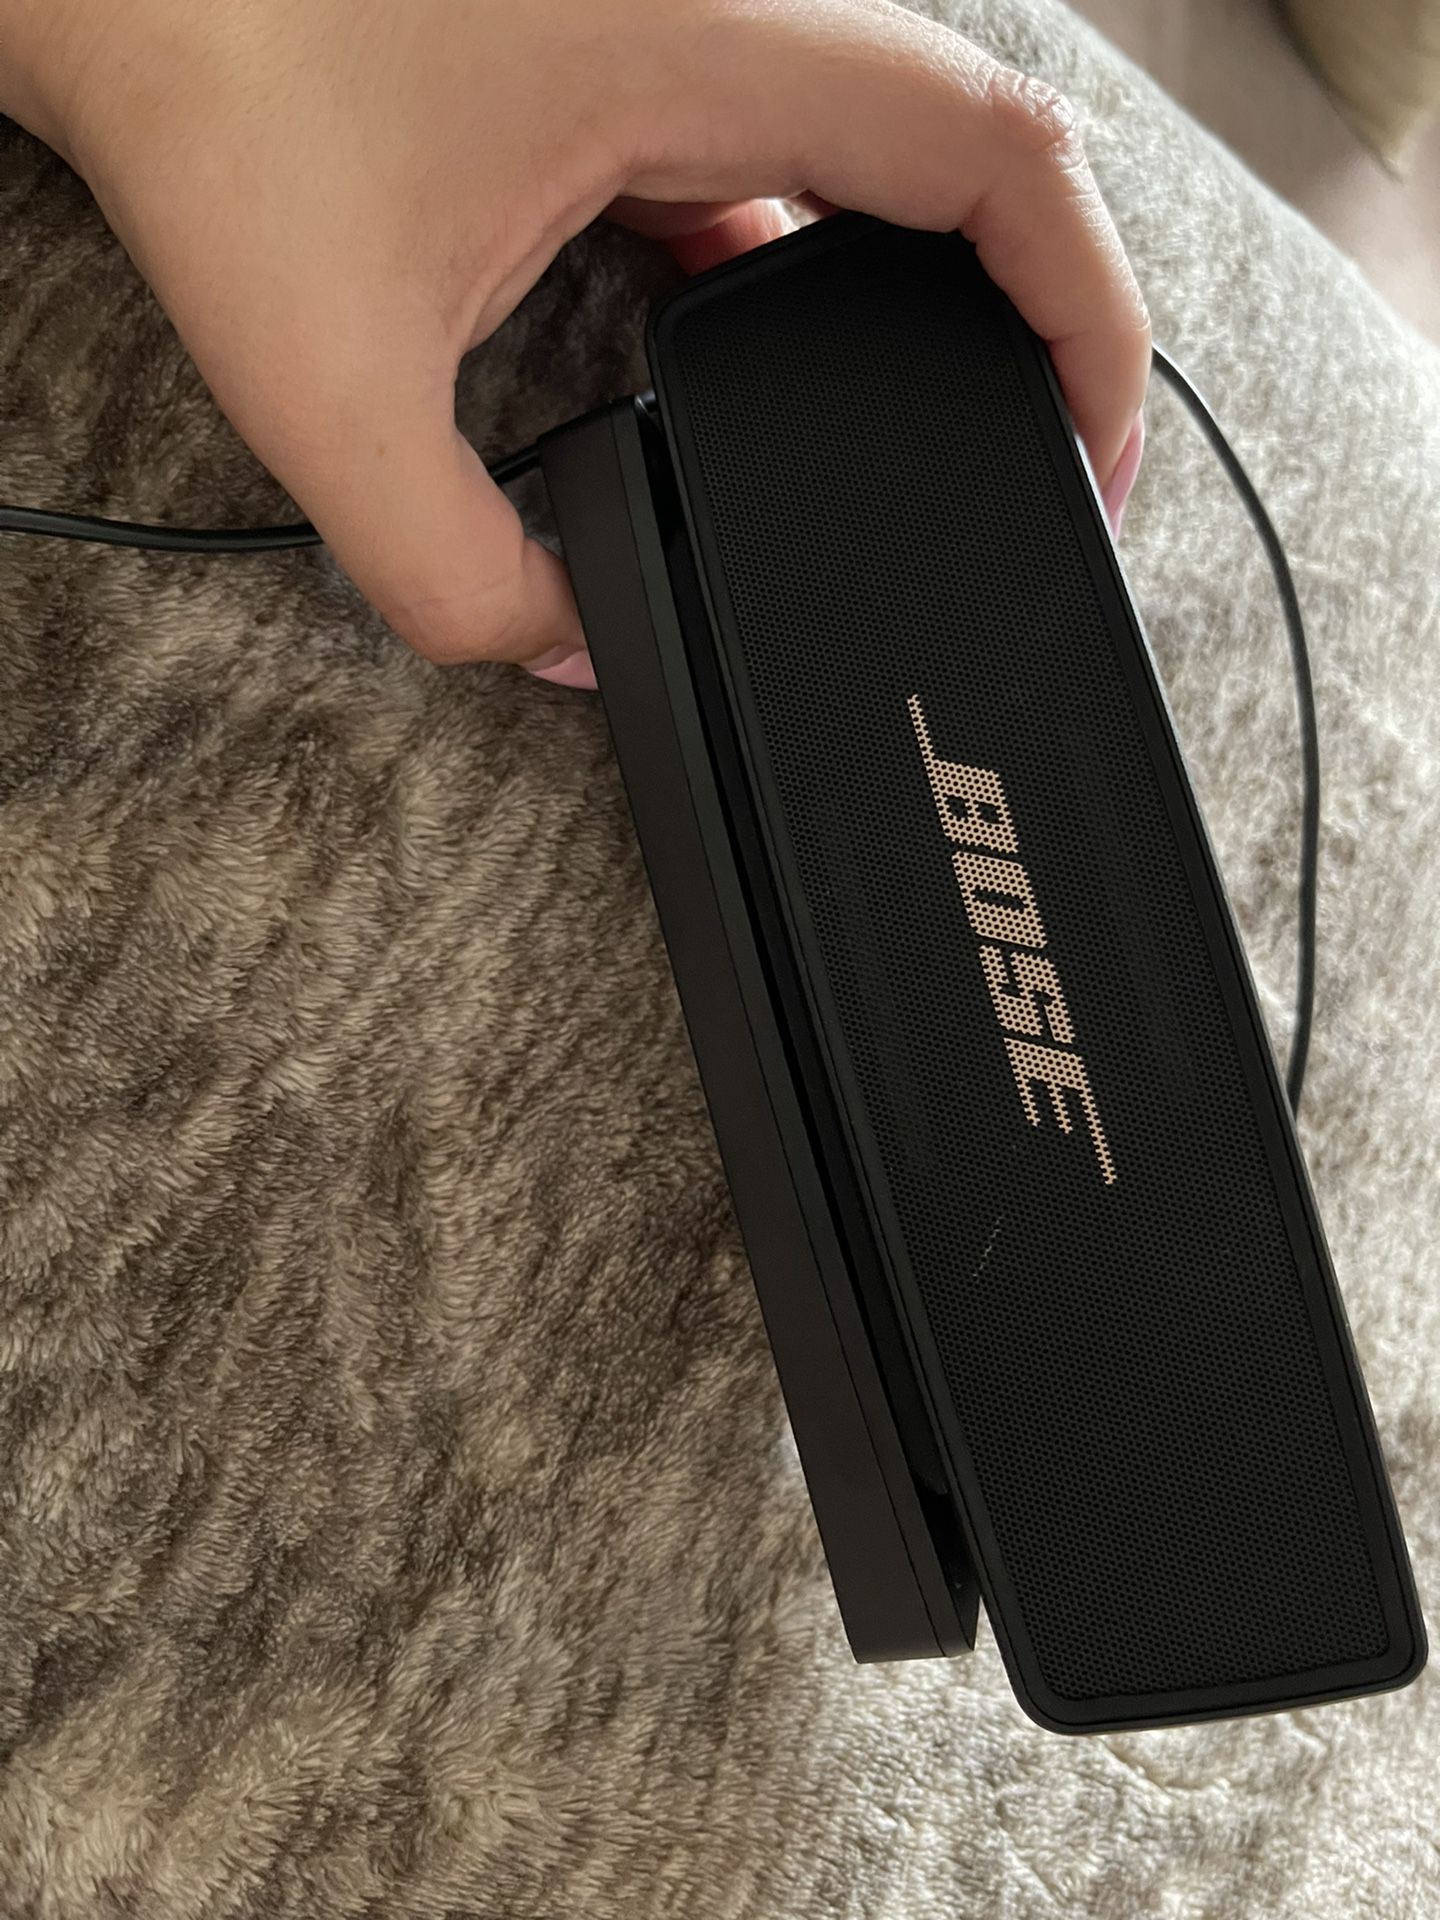 Bose Sound Link Speaker